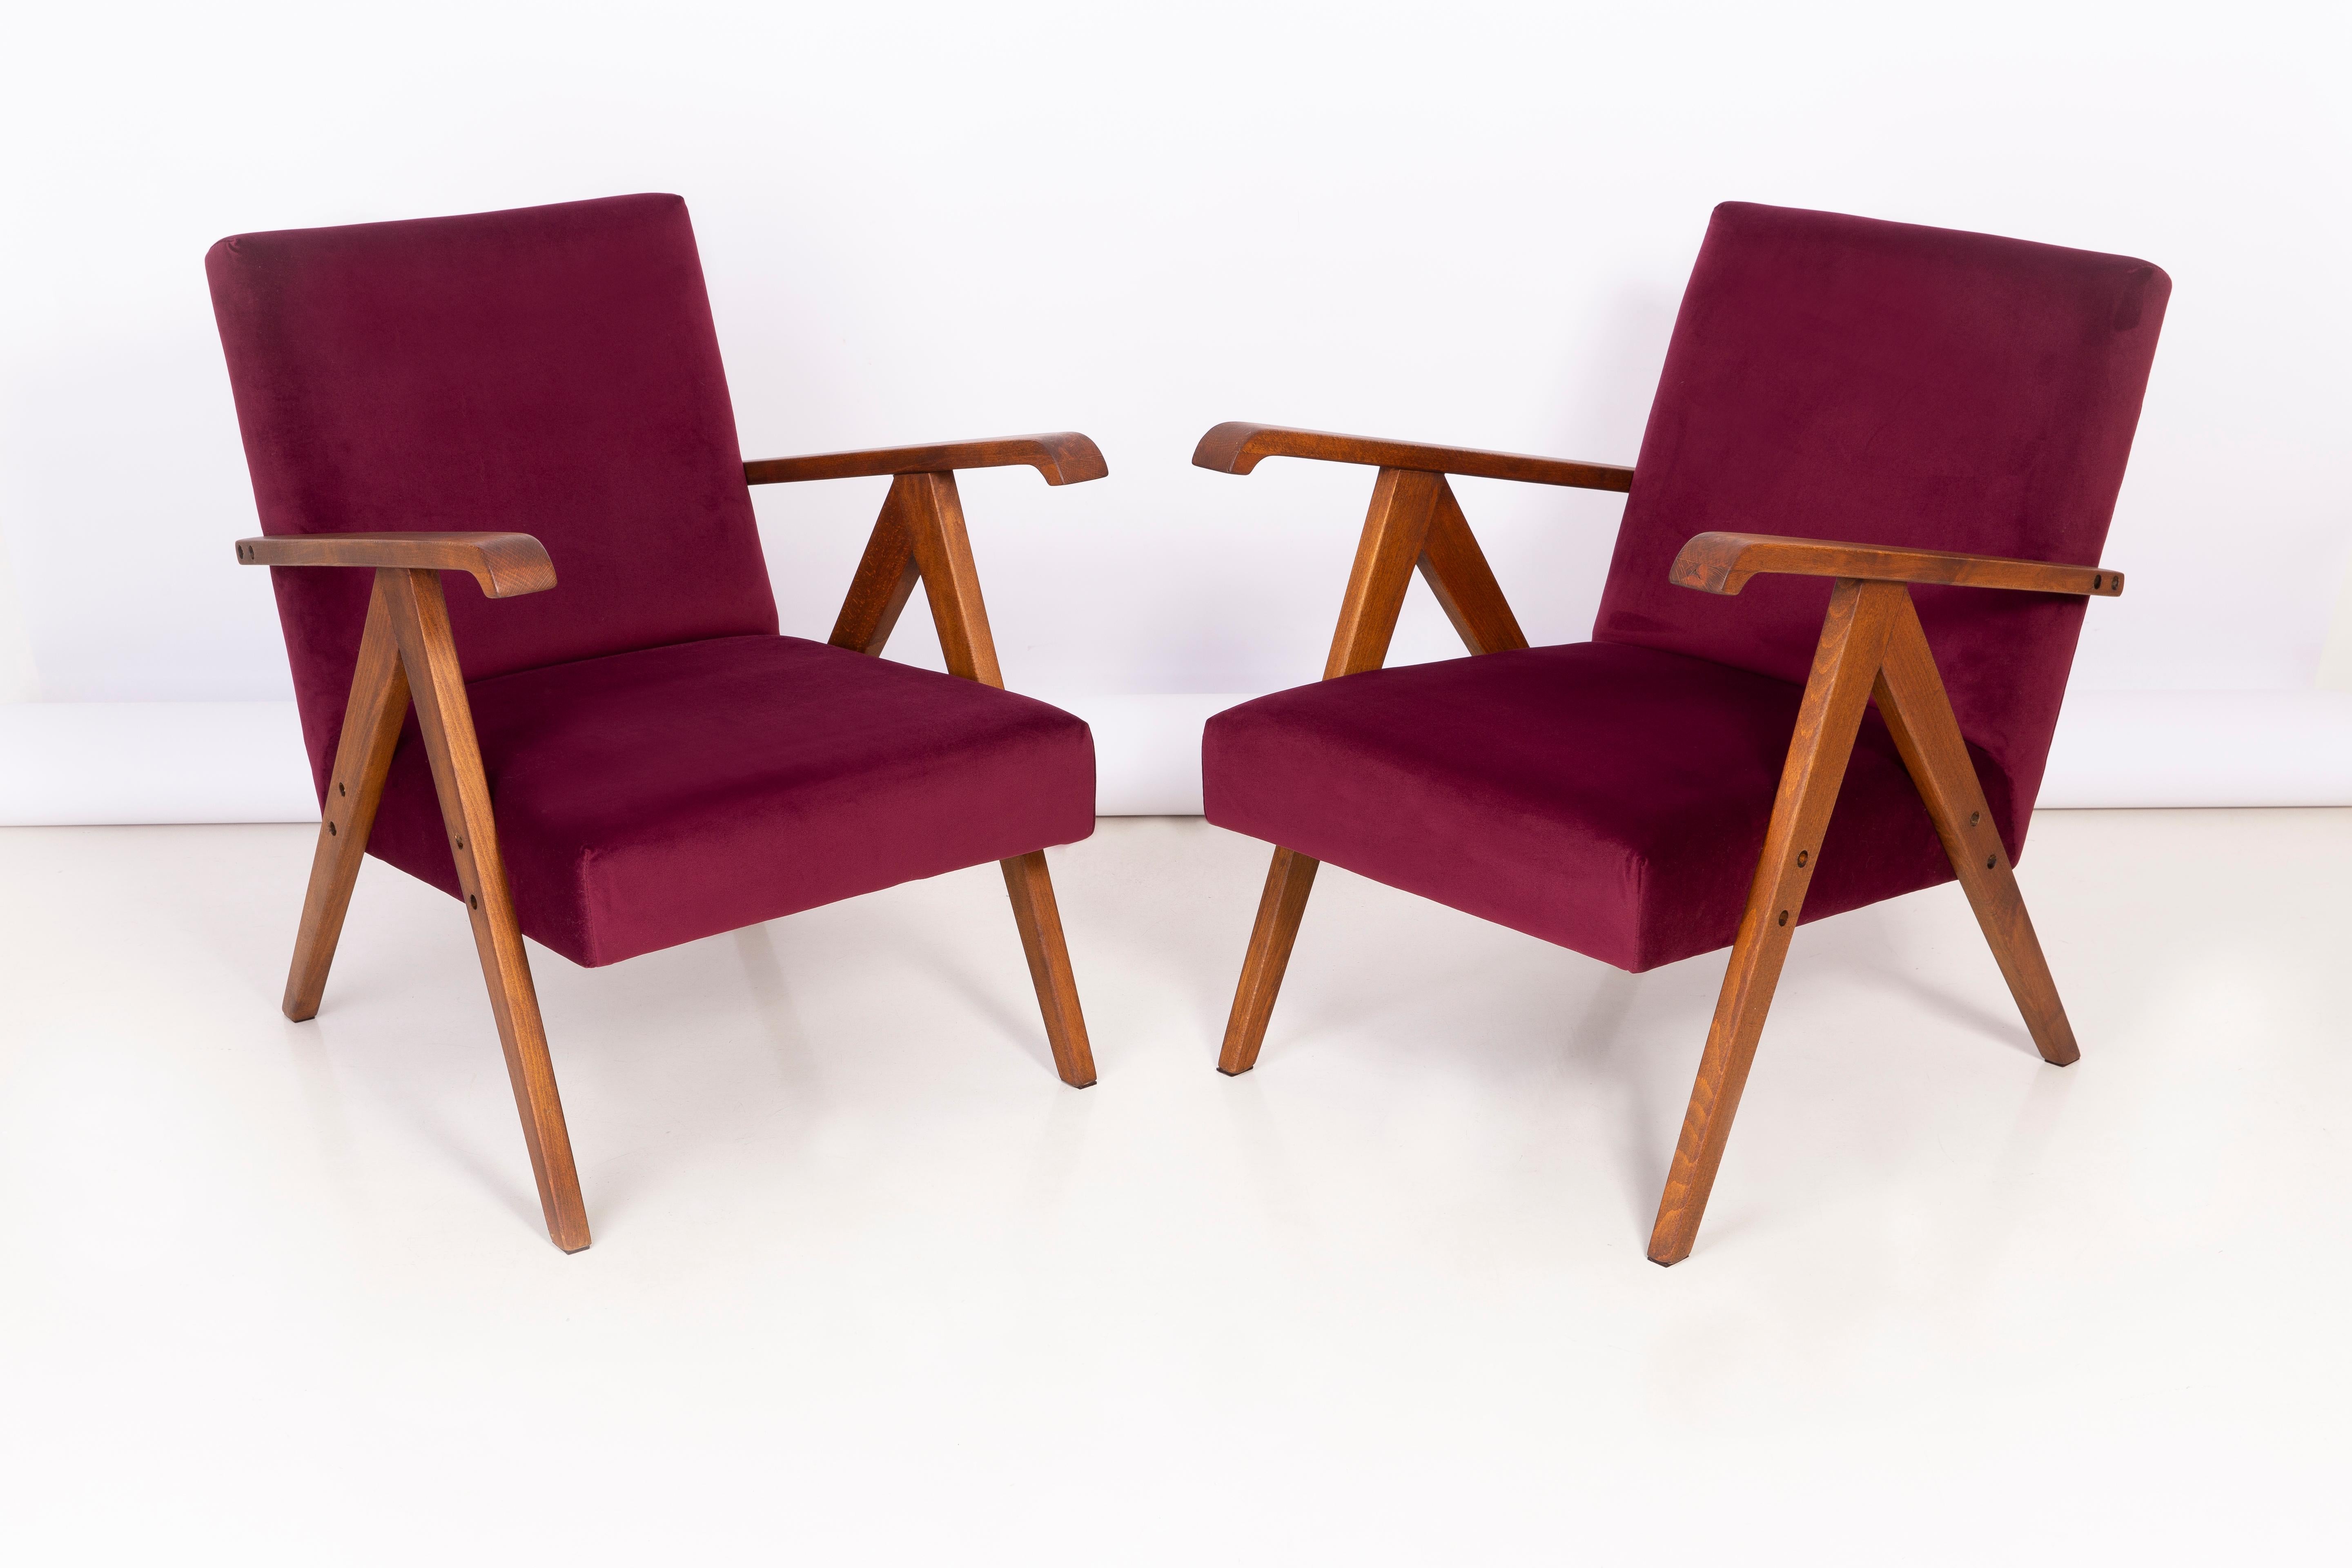 Un beau fauteuil restauré, conçu par Henryk Lis. Meubles après une rénovation complète de la menuiserie et de la tapisserie. Le tissu, qui recouvre un dossier et une assise, est un revêtement en velours bordeaux de haute qualité (couleur 2932). Les